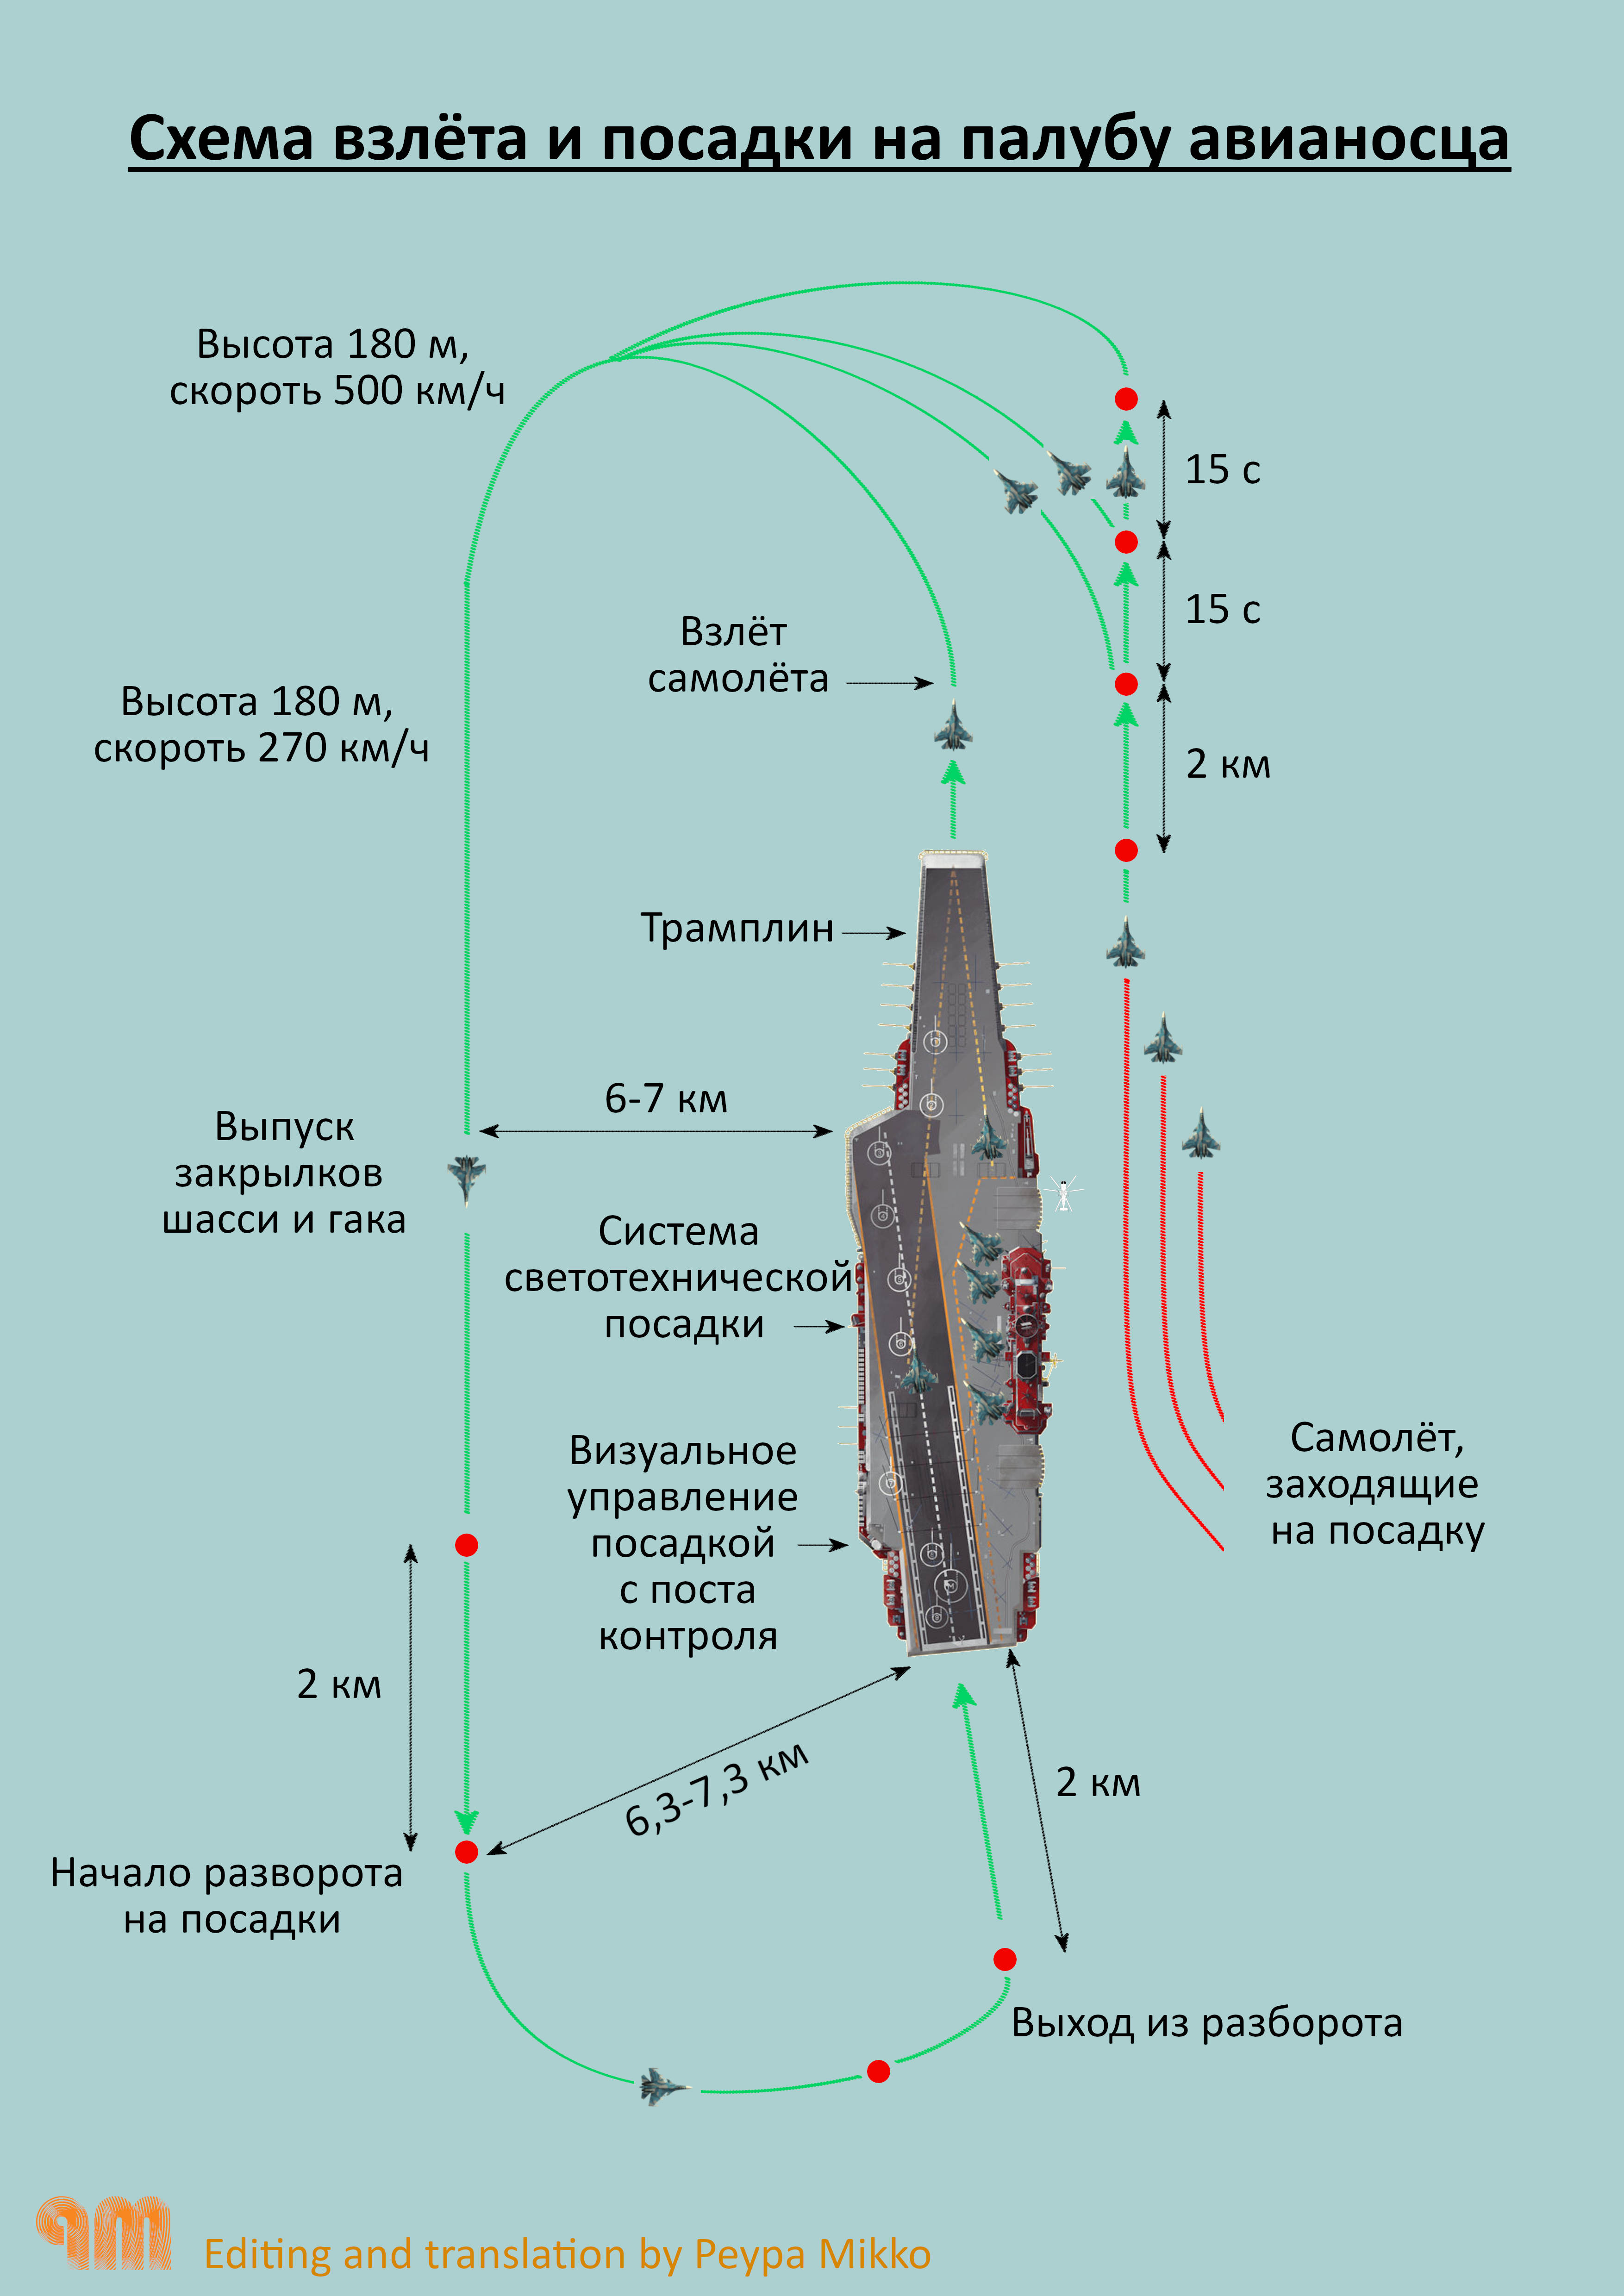 Схема взлёта и посадки на палубу авианосца "Адмирал Kузнецов"- Су-33 B2.0